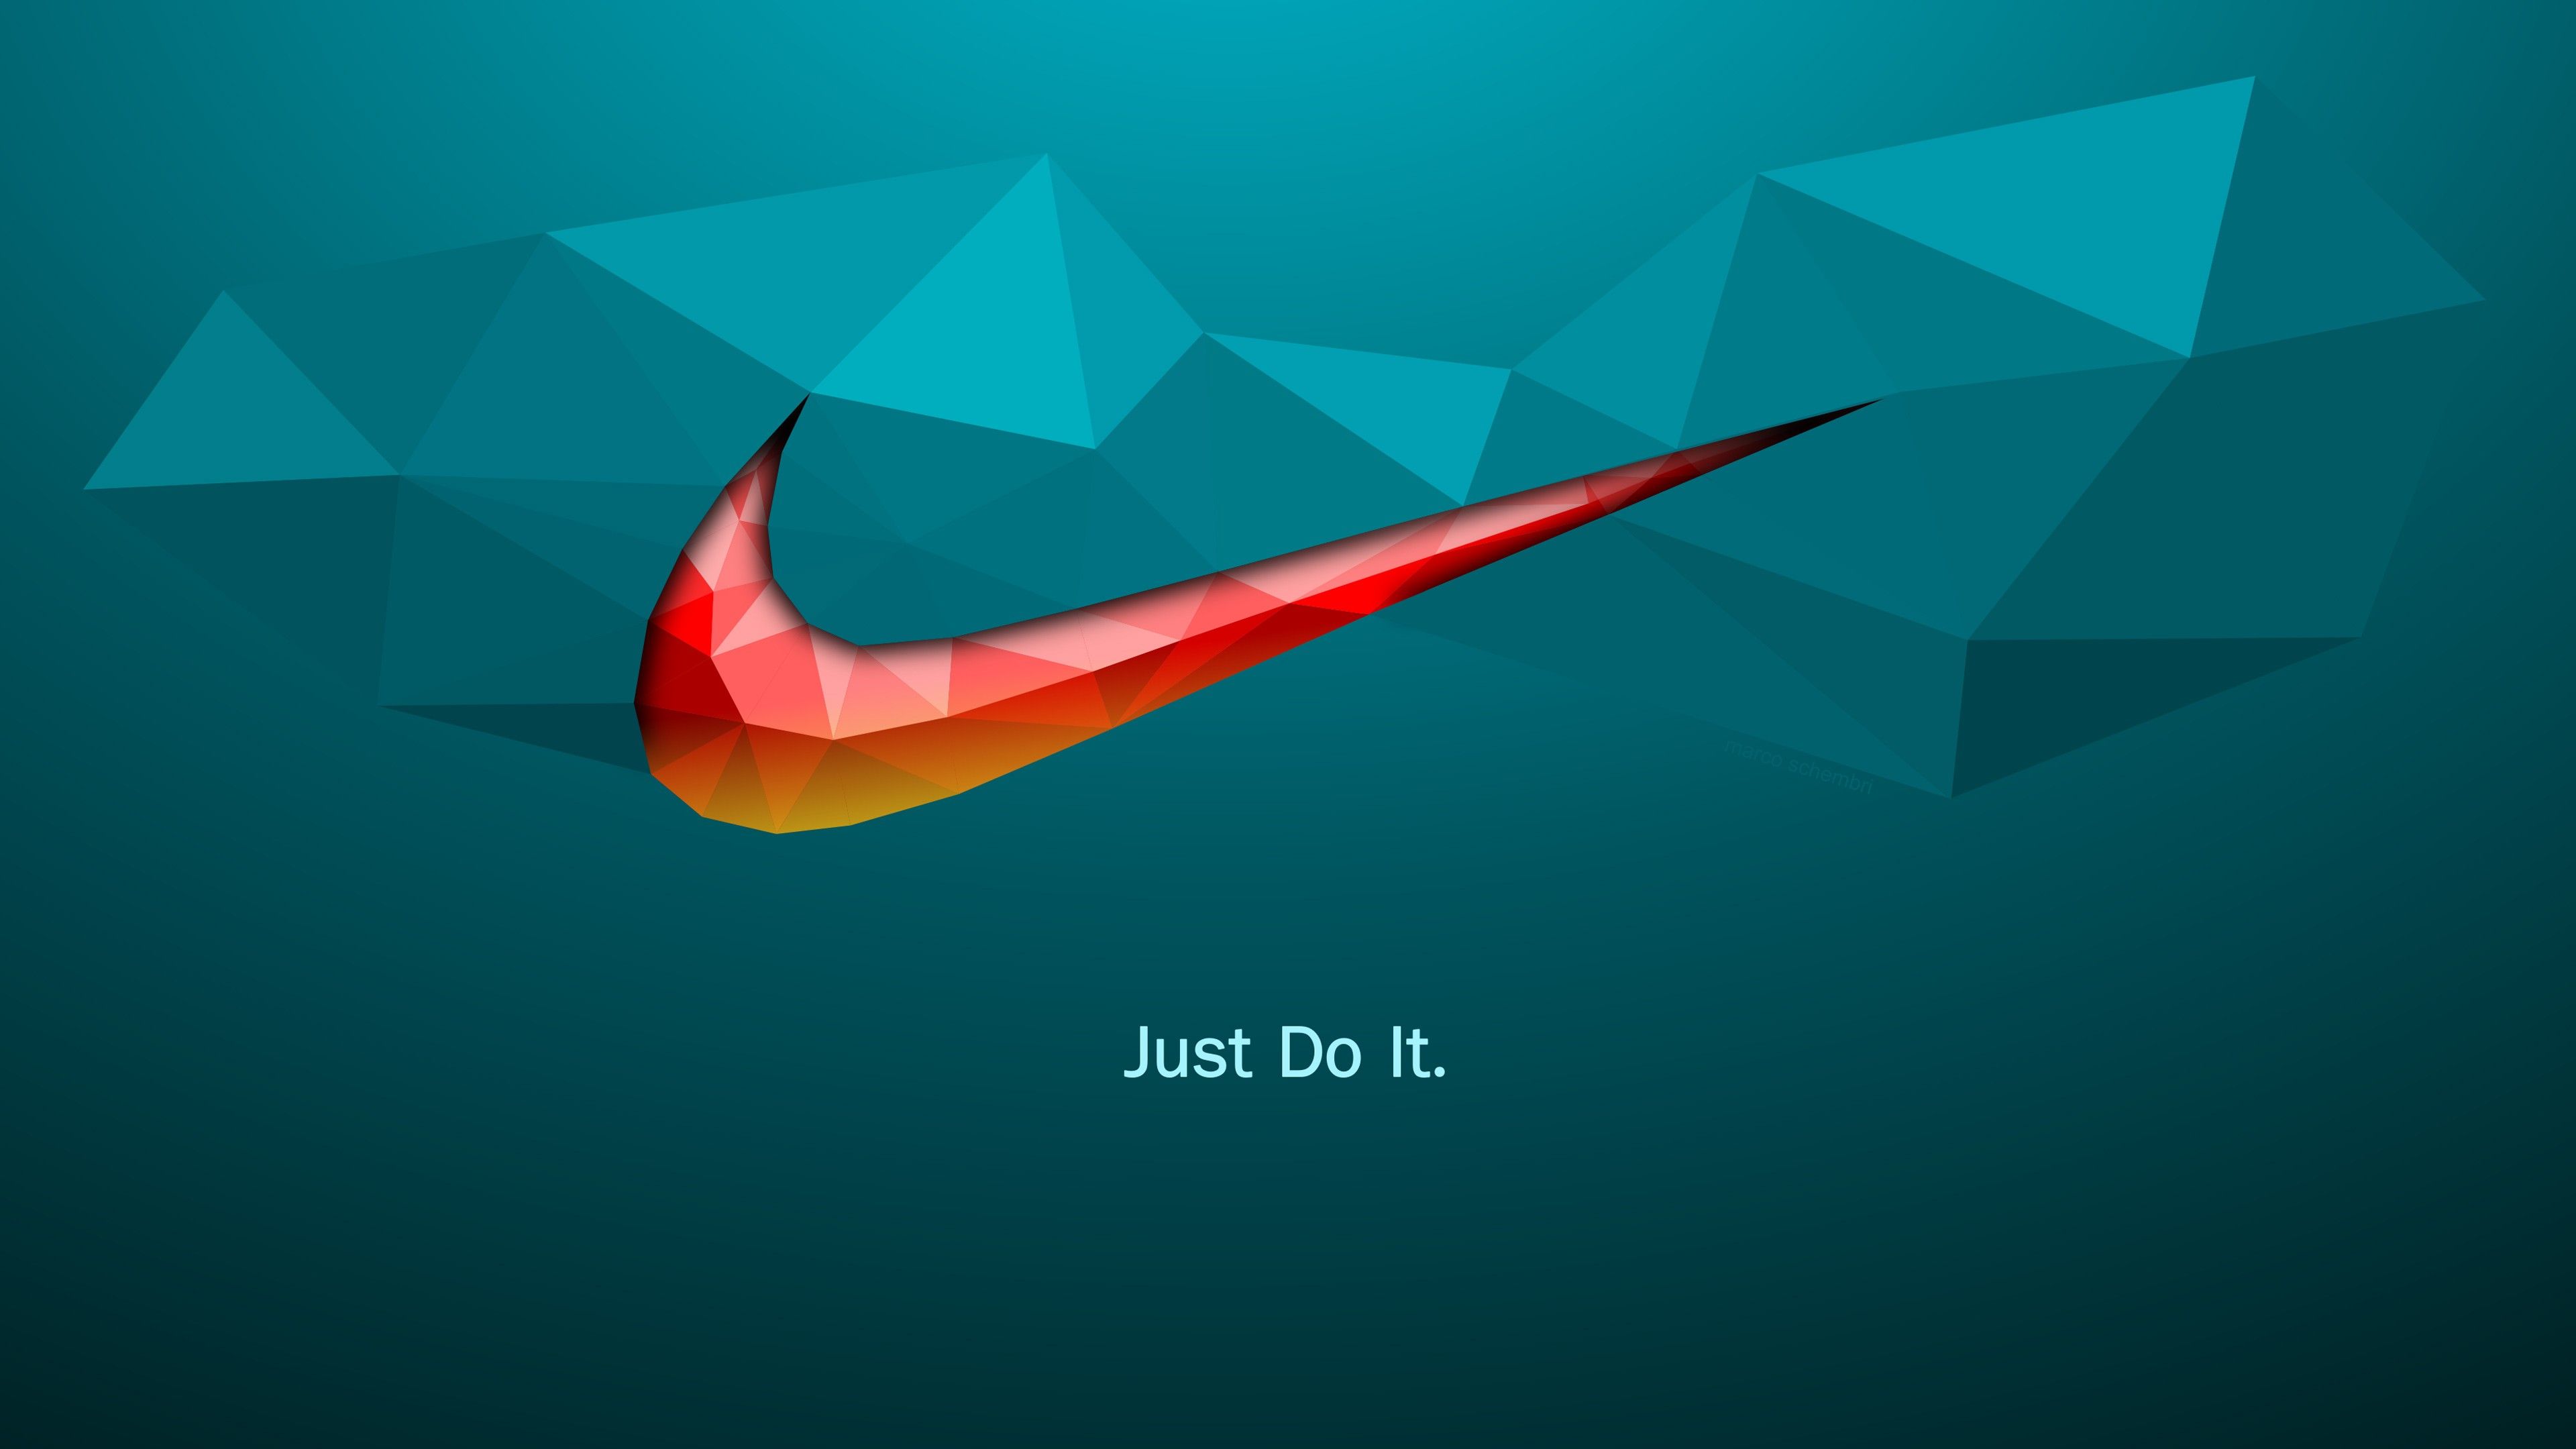 Más de 35 fondos de pantalla de Nike Just Do It - Descarga